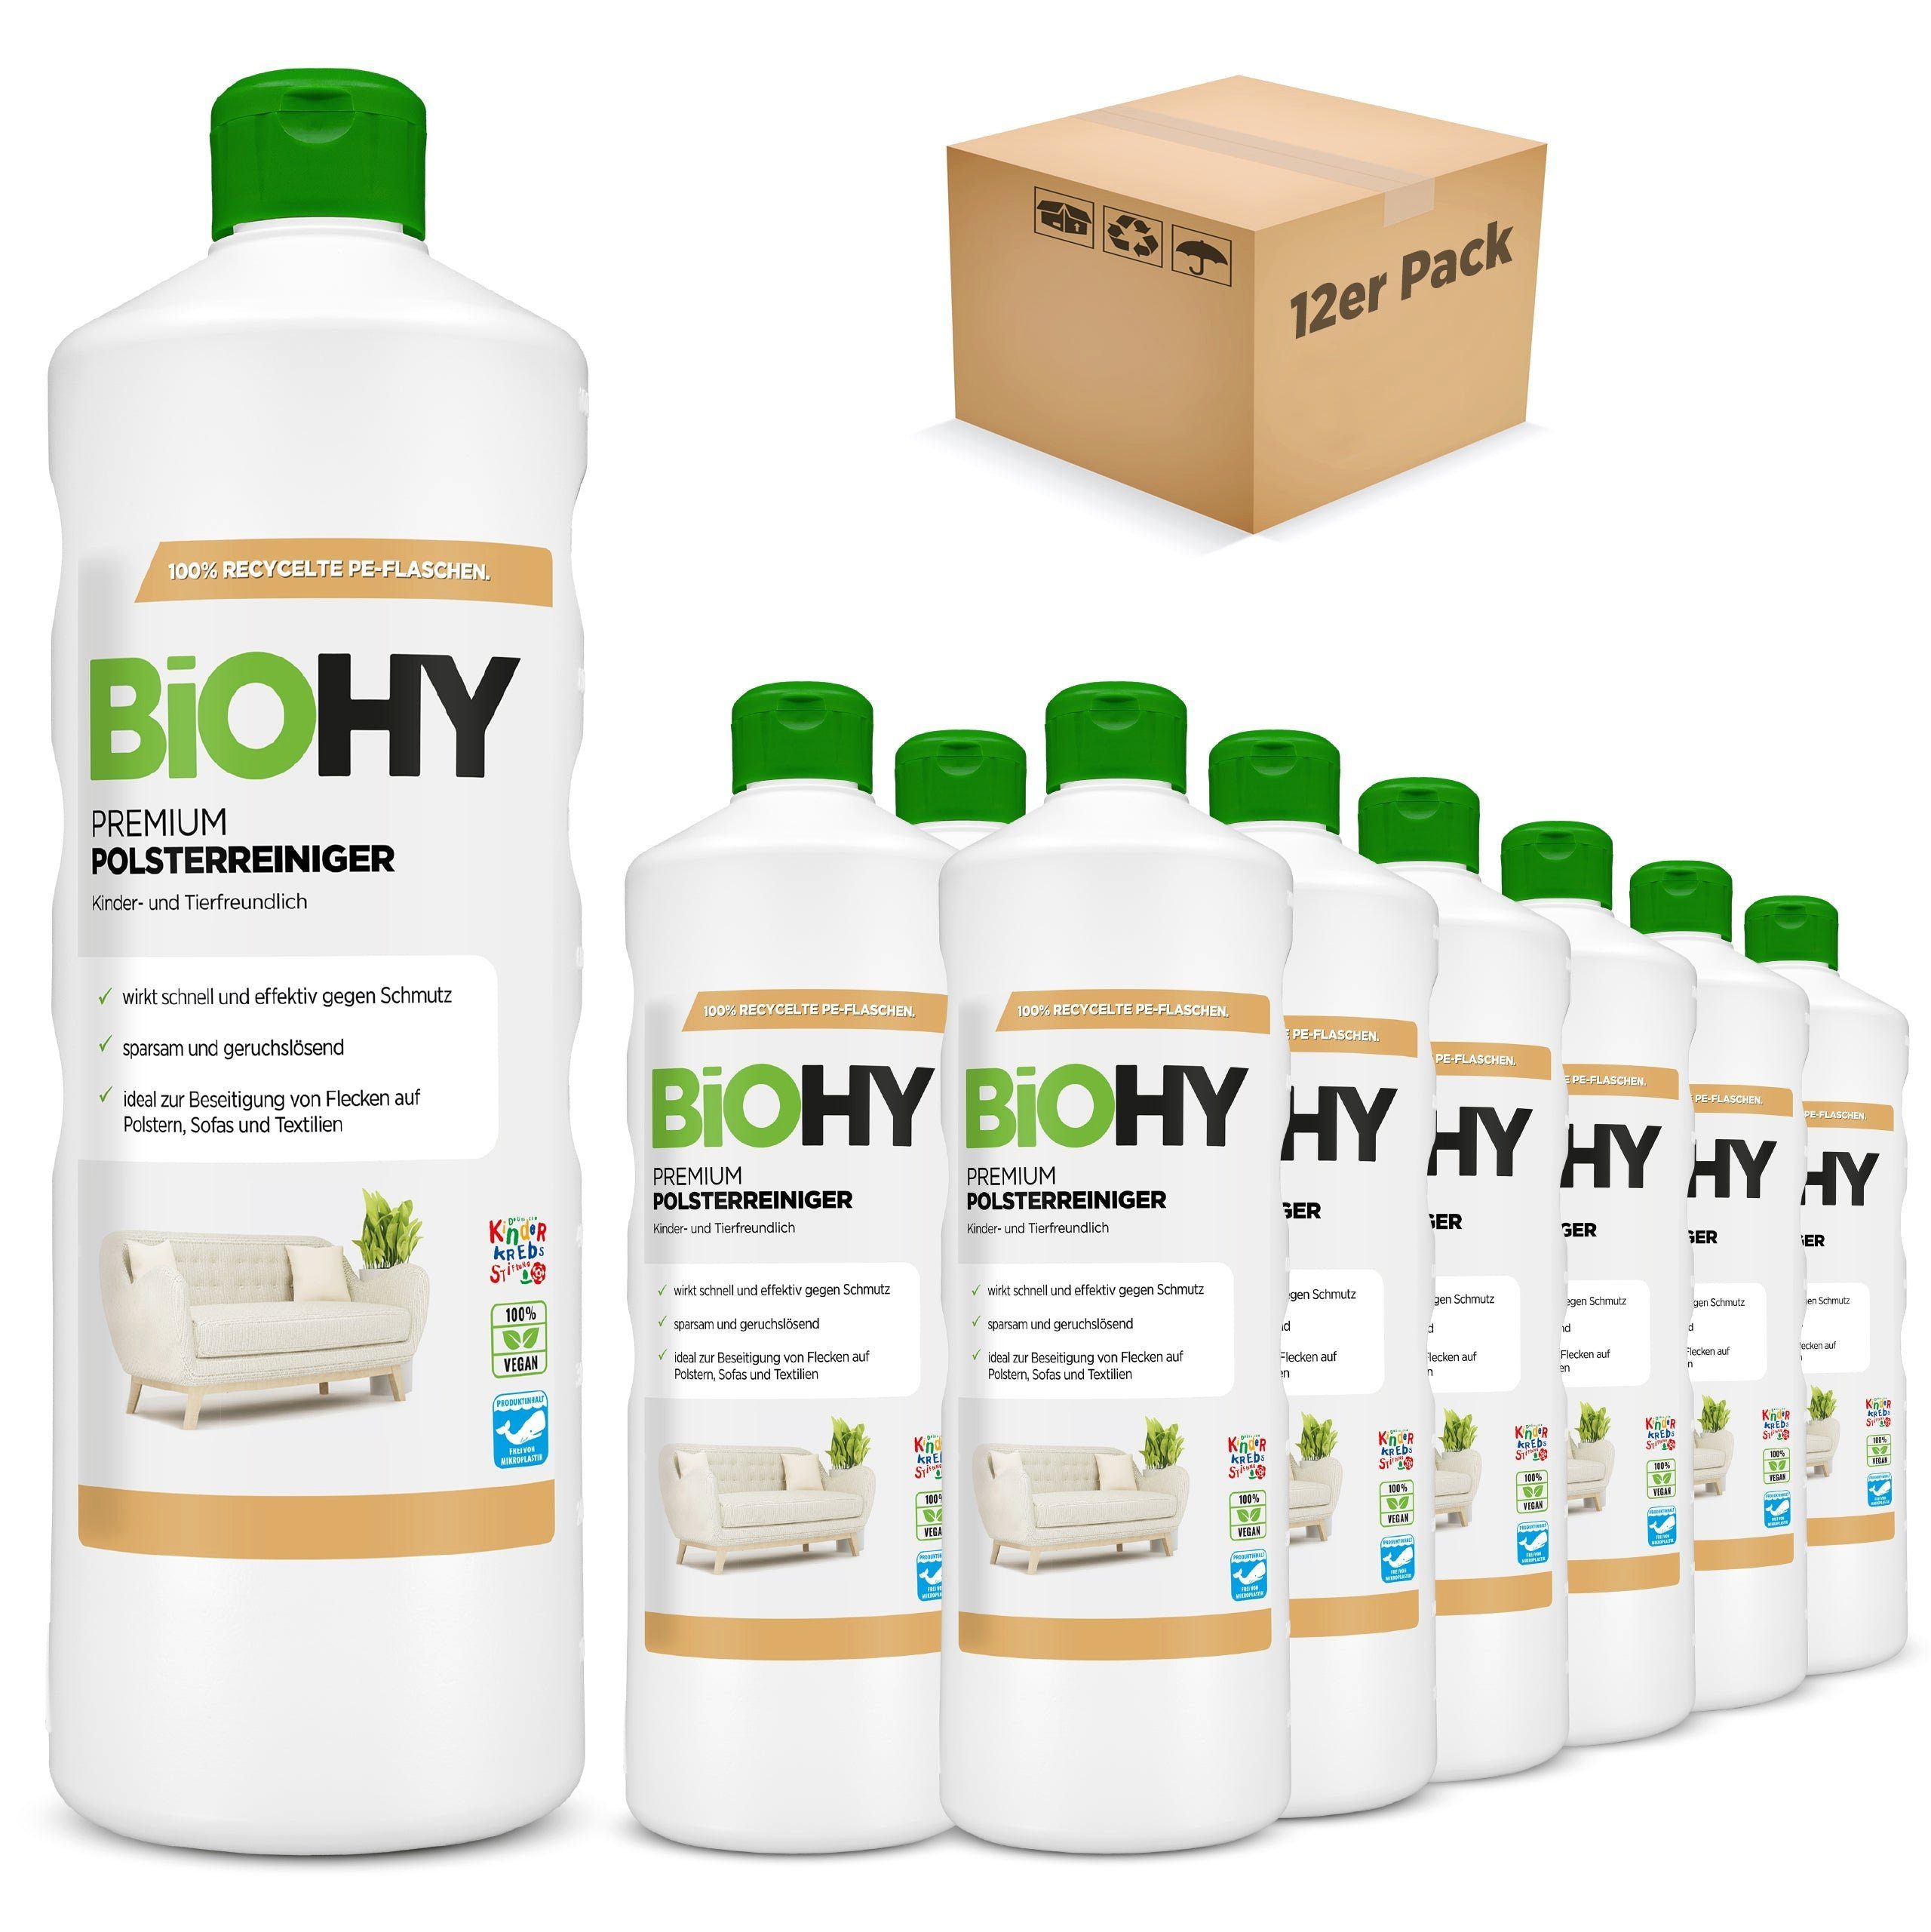 BiOHY Premium Polsterreiniger 12er Pack (12 x 1 Liter Flasche) Polsterreiniger (12-St)